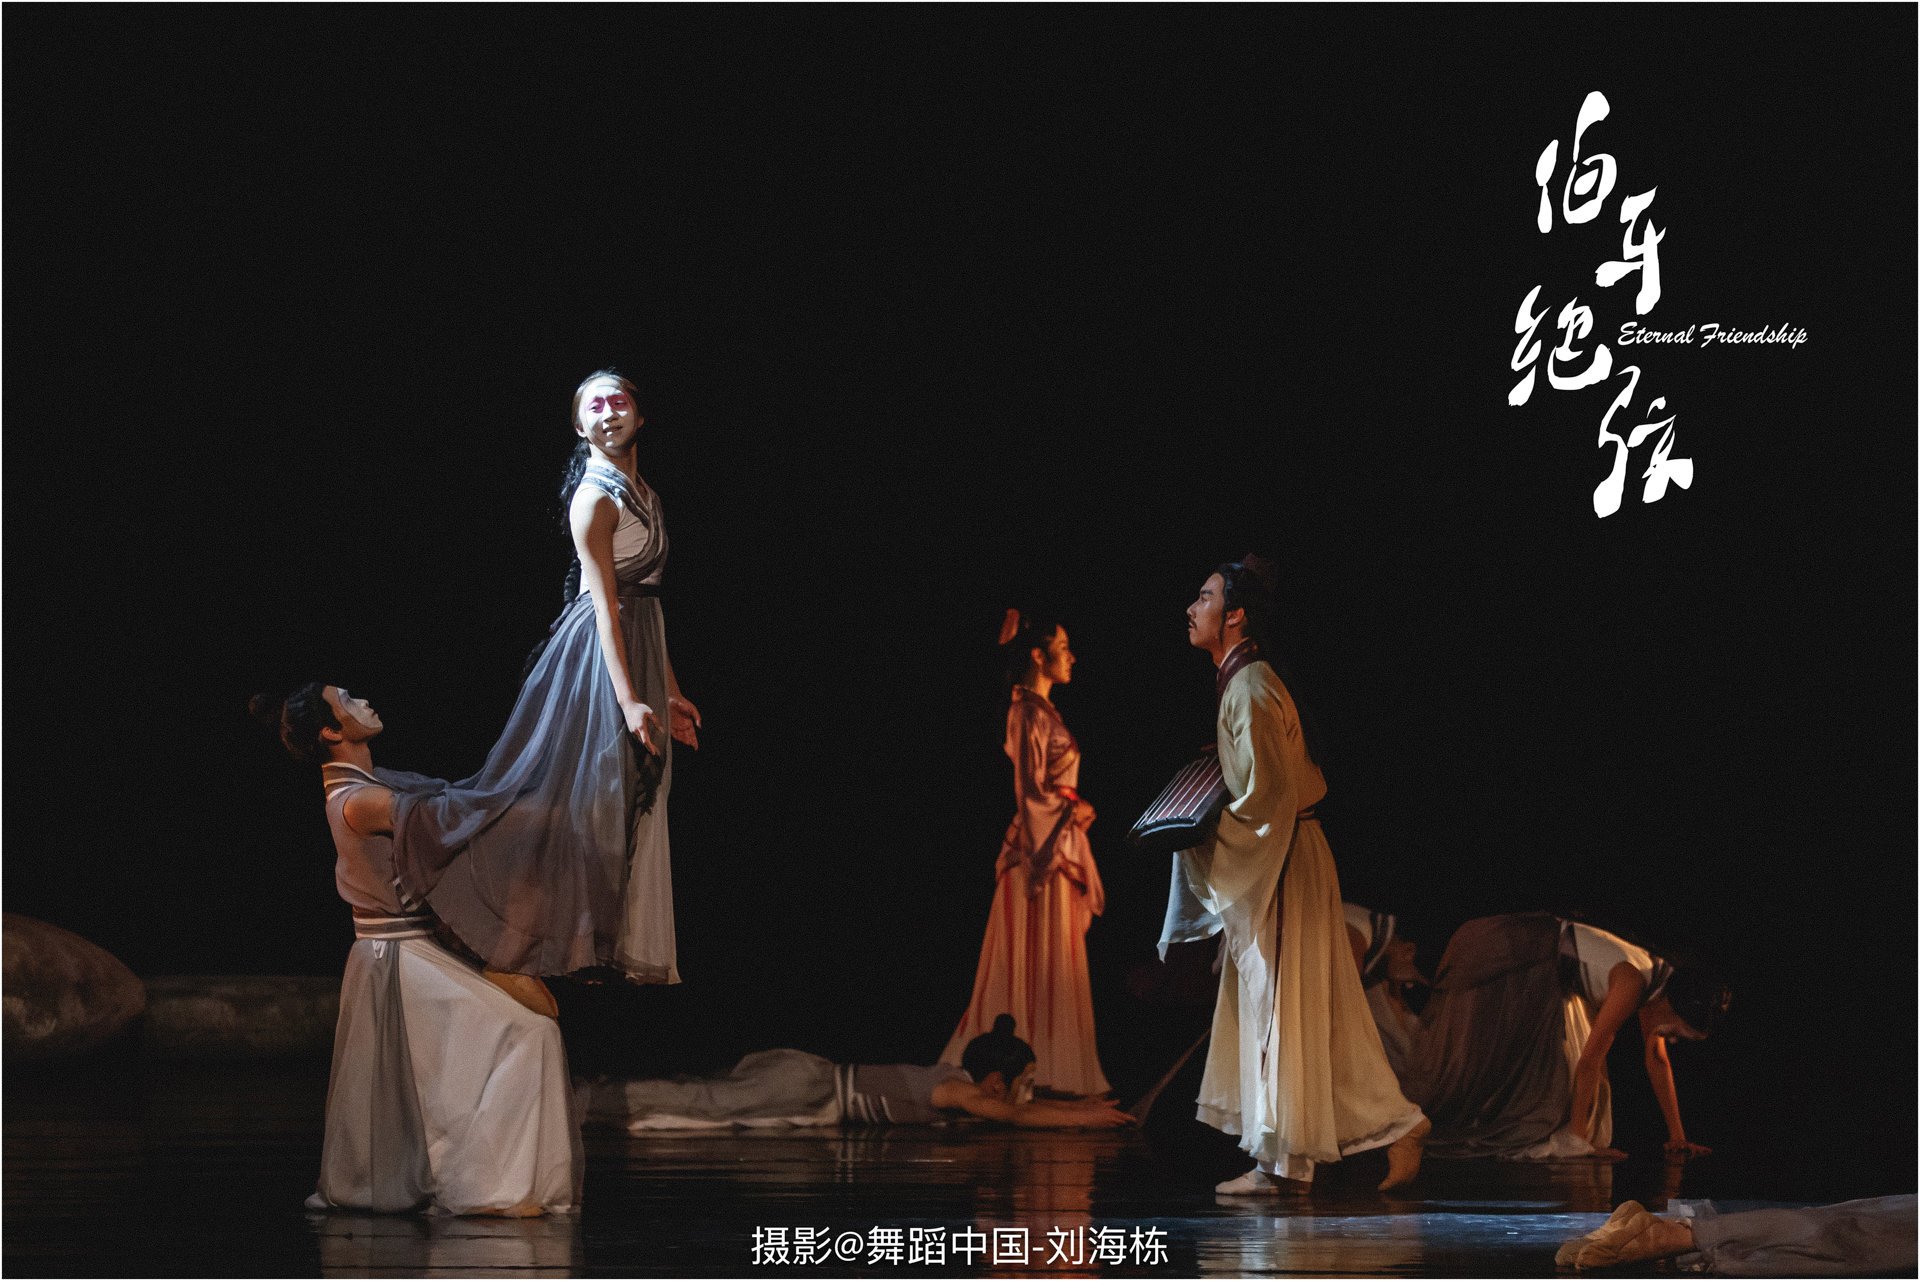 005 2018.10.09 中国古典舞实验舞剧《伯牙绝弦》.jpg